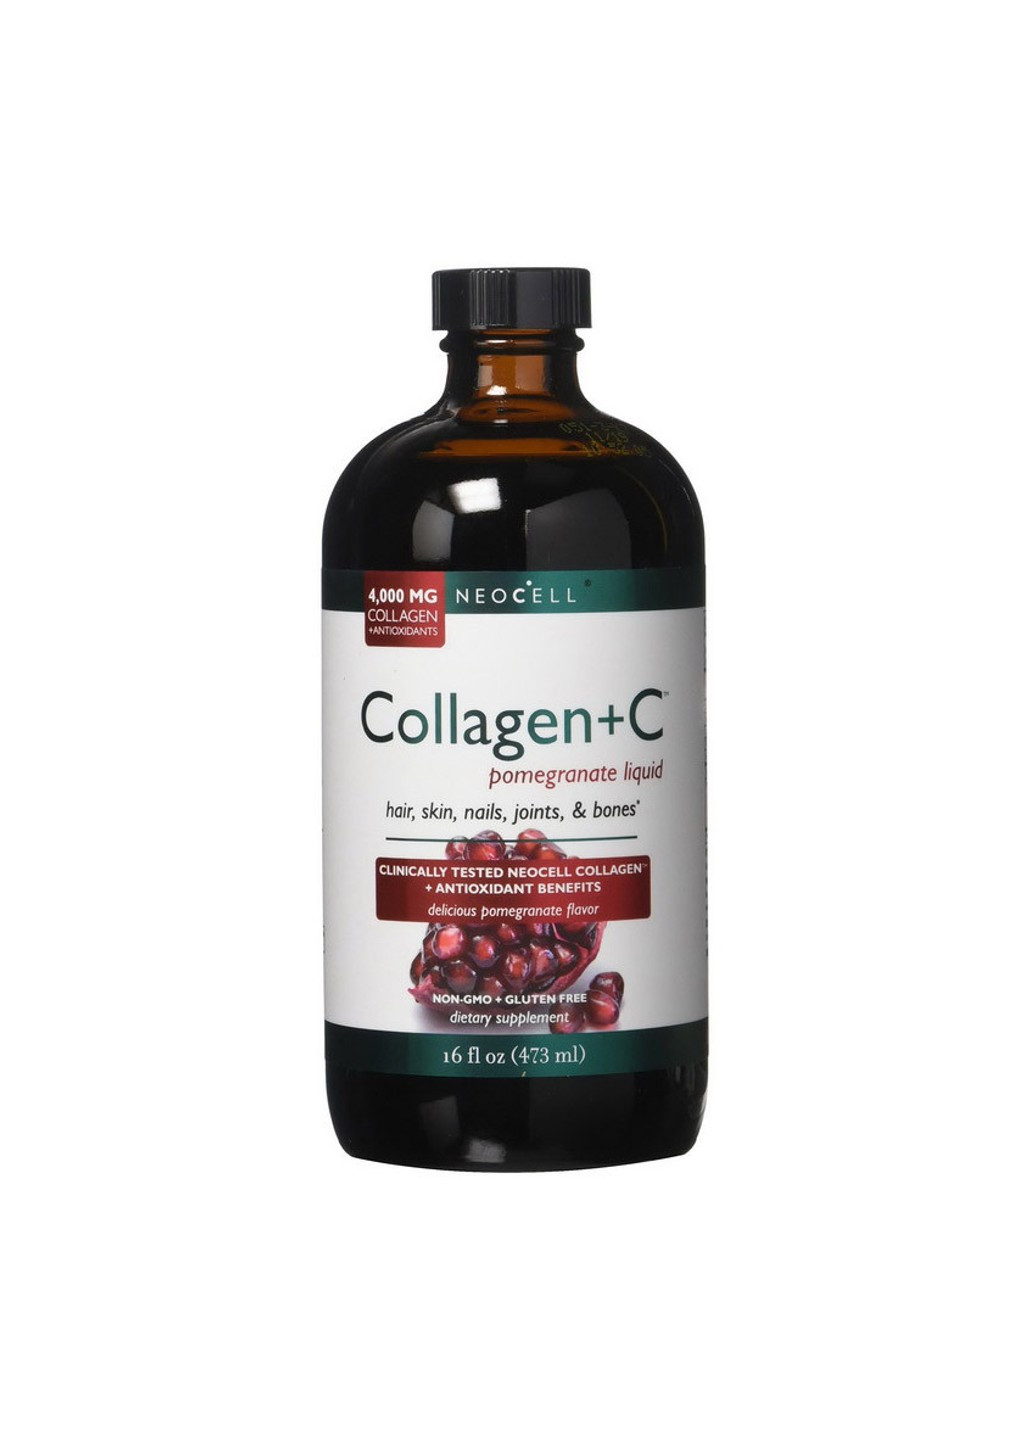 Жидкий Коллаген Collagen+C pomegranate liquid (473 мл) неоселл Neocell (255408760)